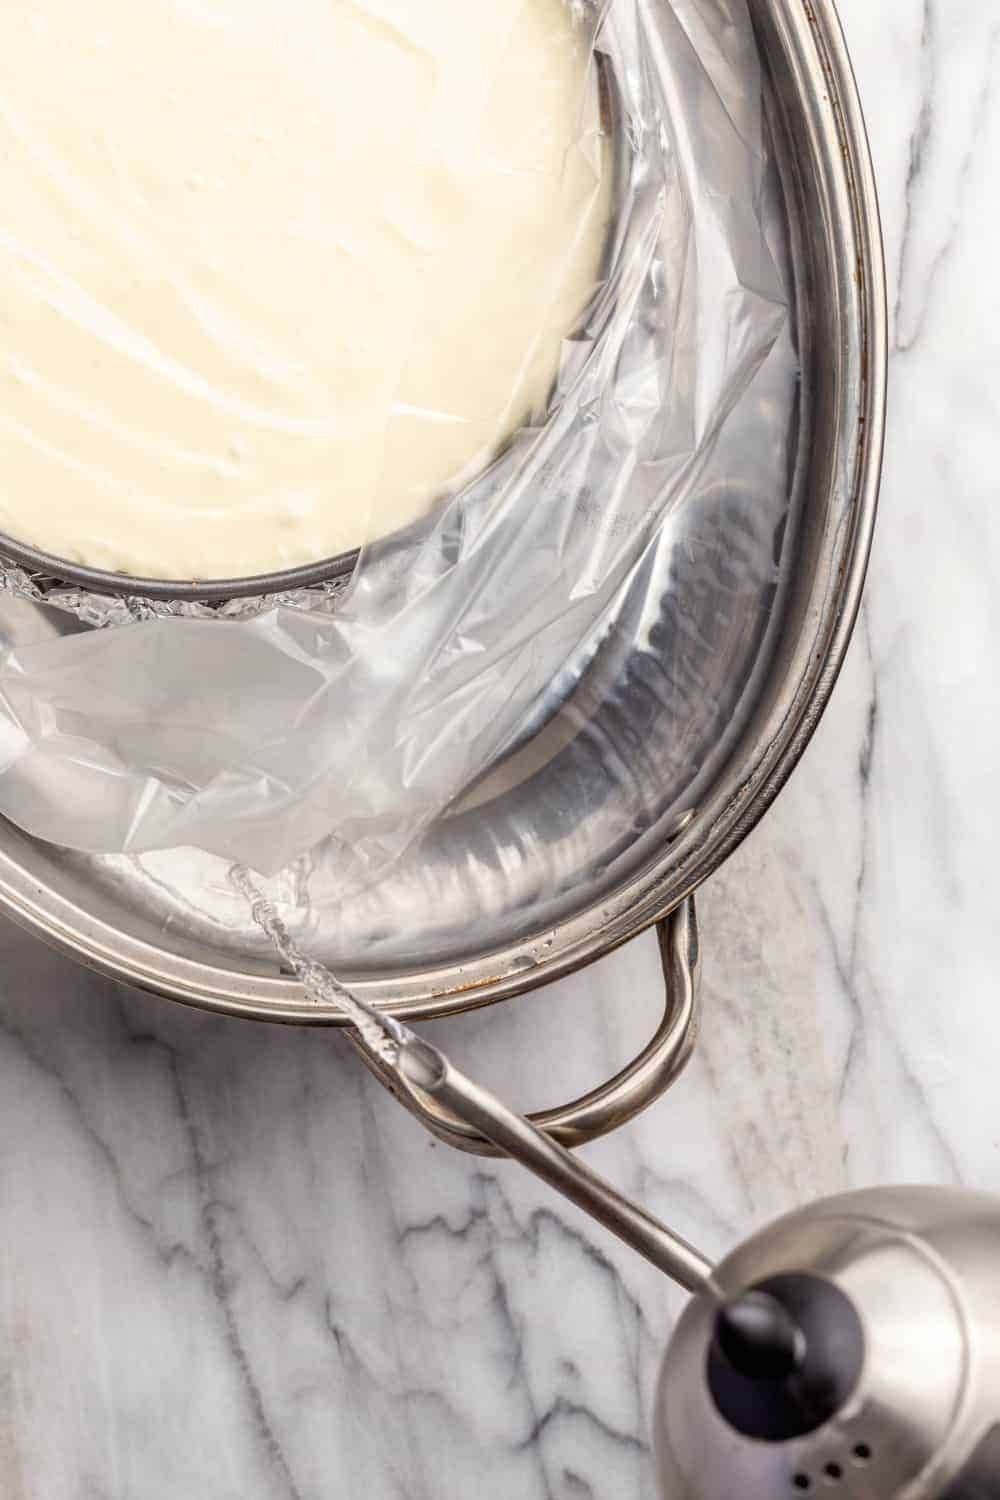 Easy Bath Cheesecake Wrap- Springform Pan Protector